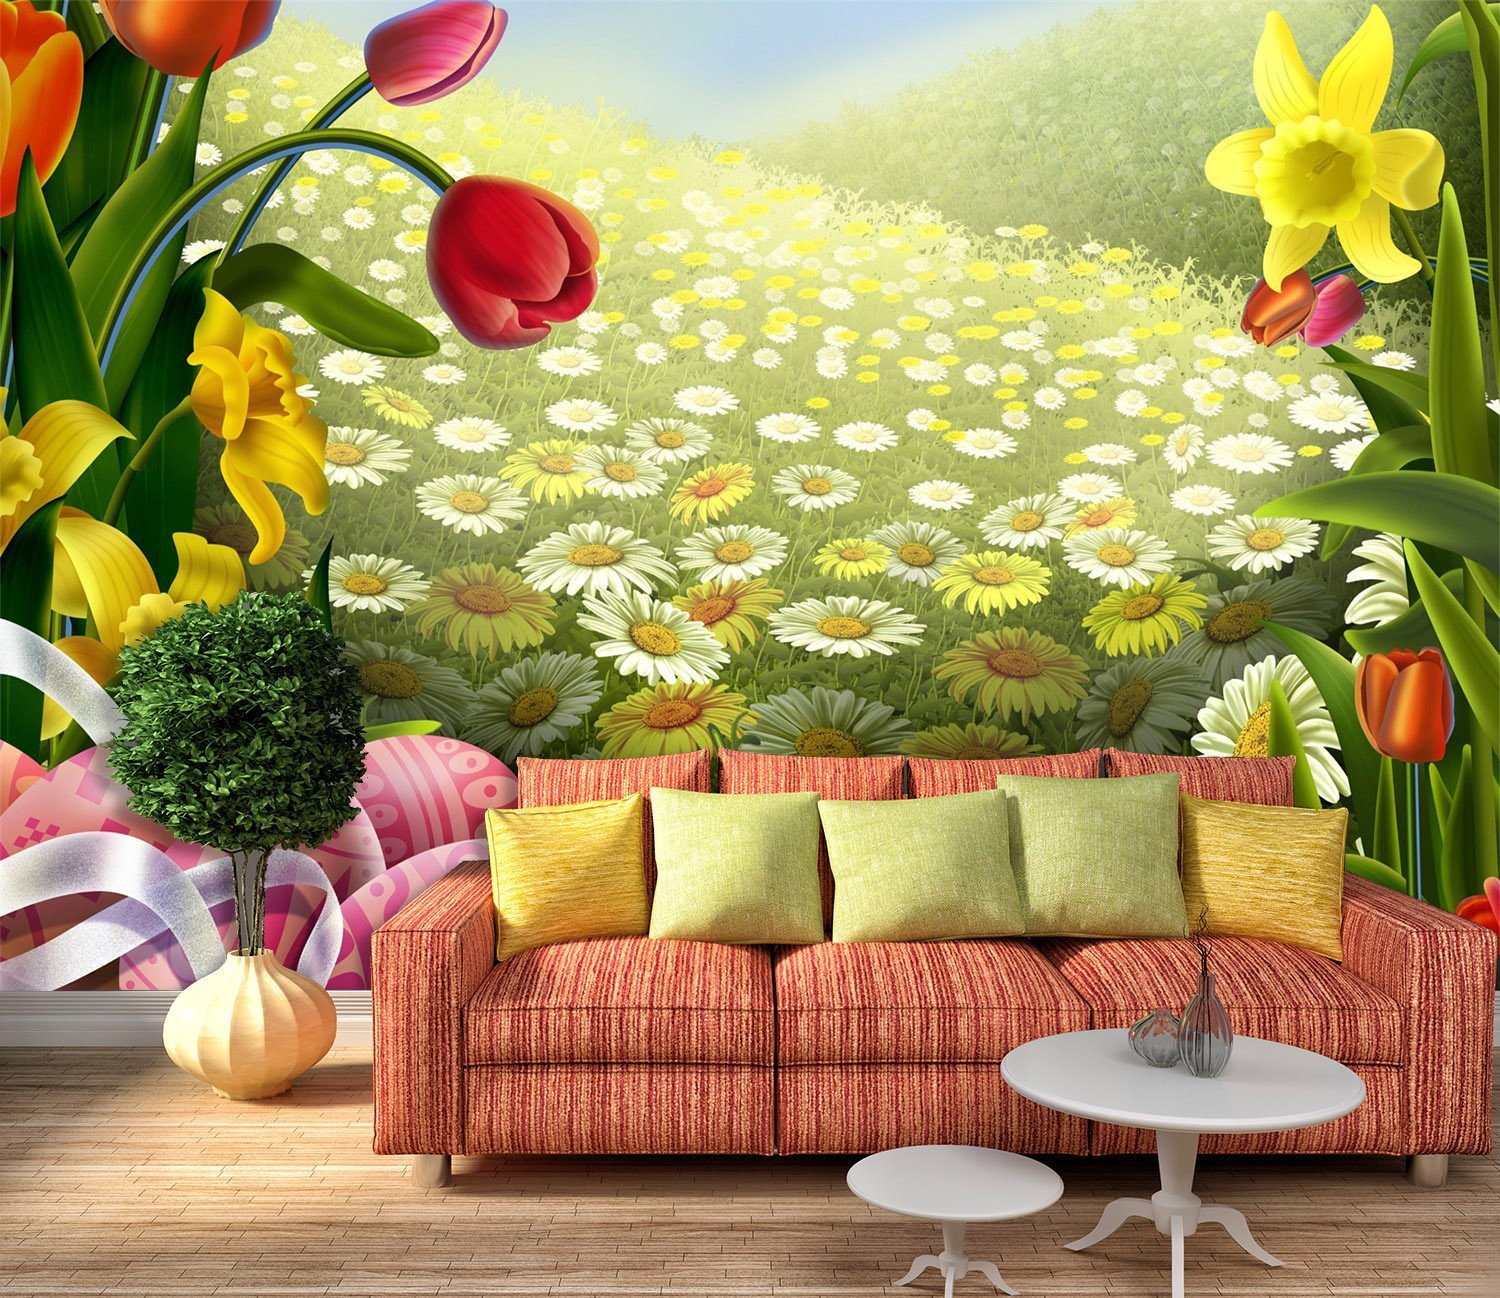 3D Sunshine Flower Manor 787 Wallpaper AJ Wallpaper 